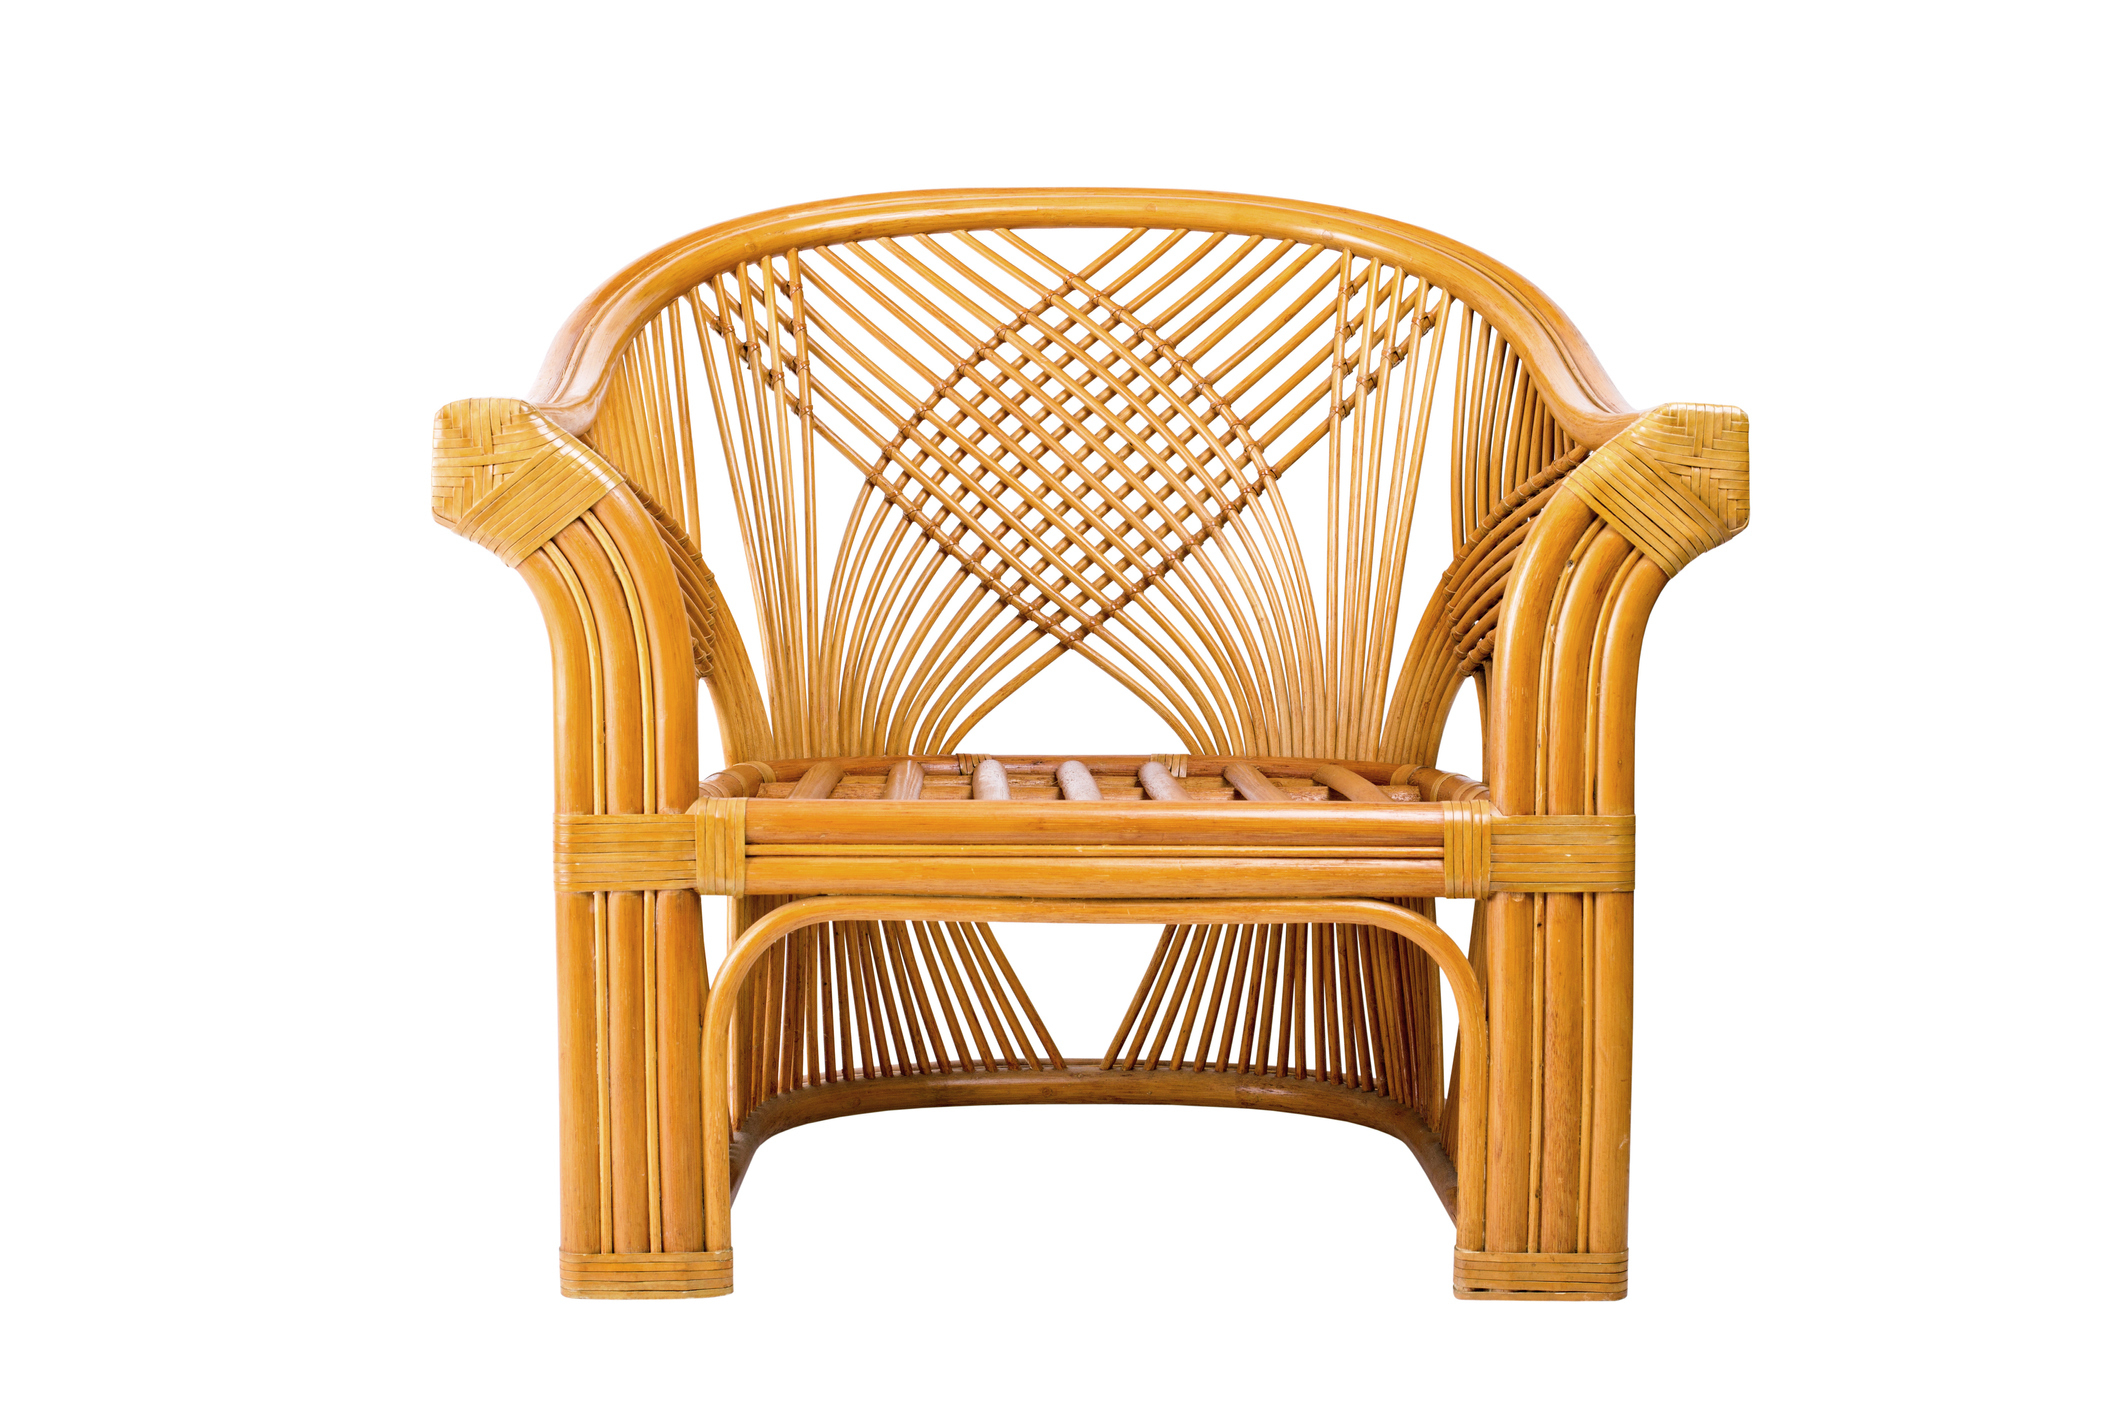 A rattan chair